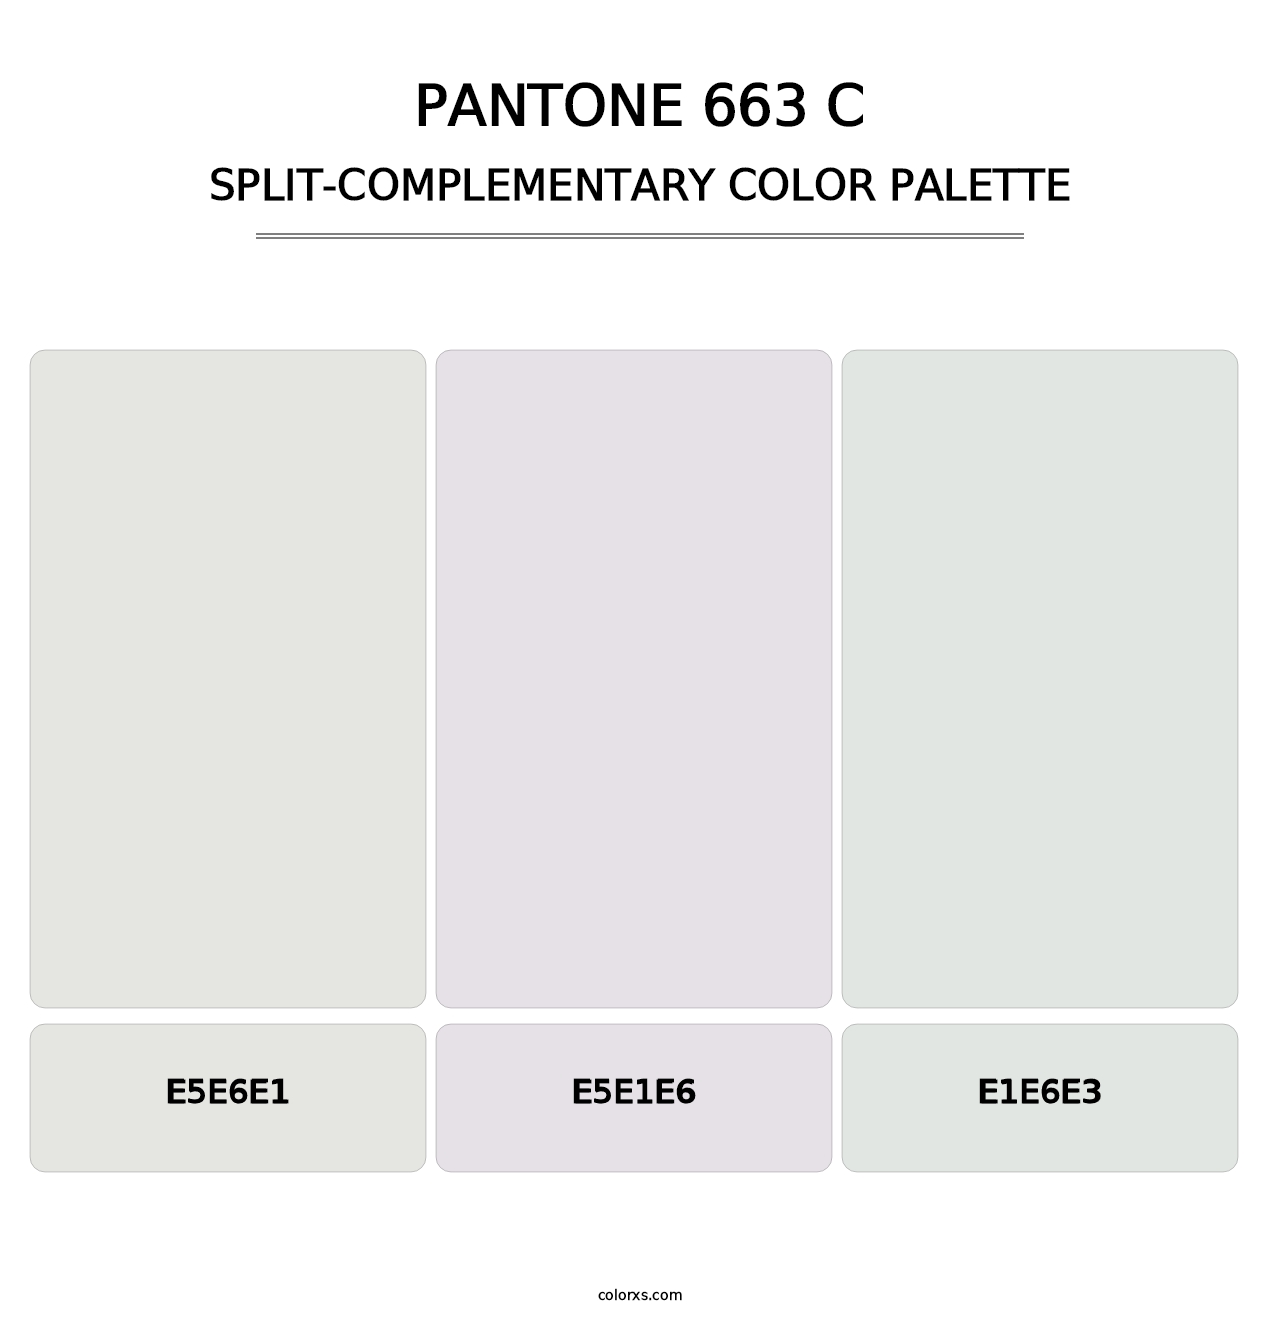 PANTONE 663 C - Split-Complementary Color Palette